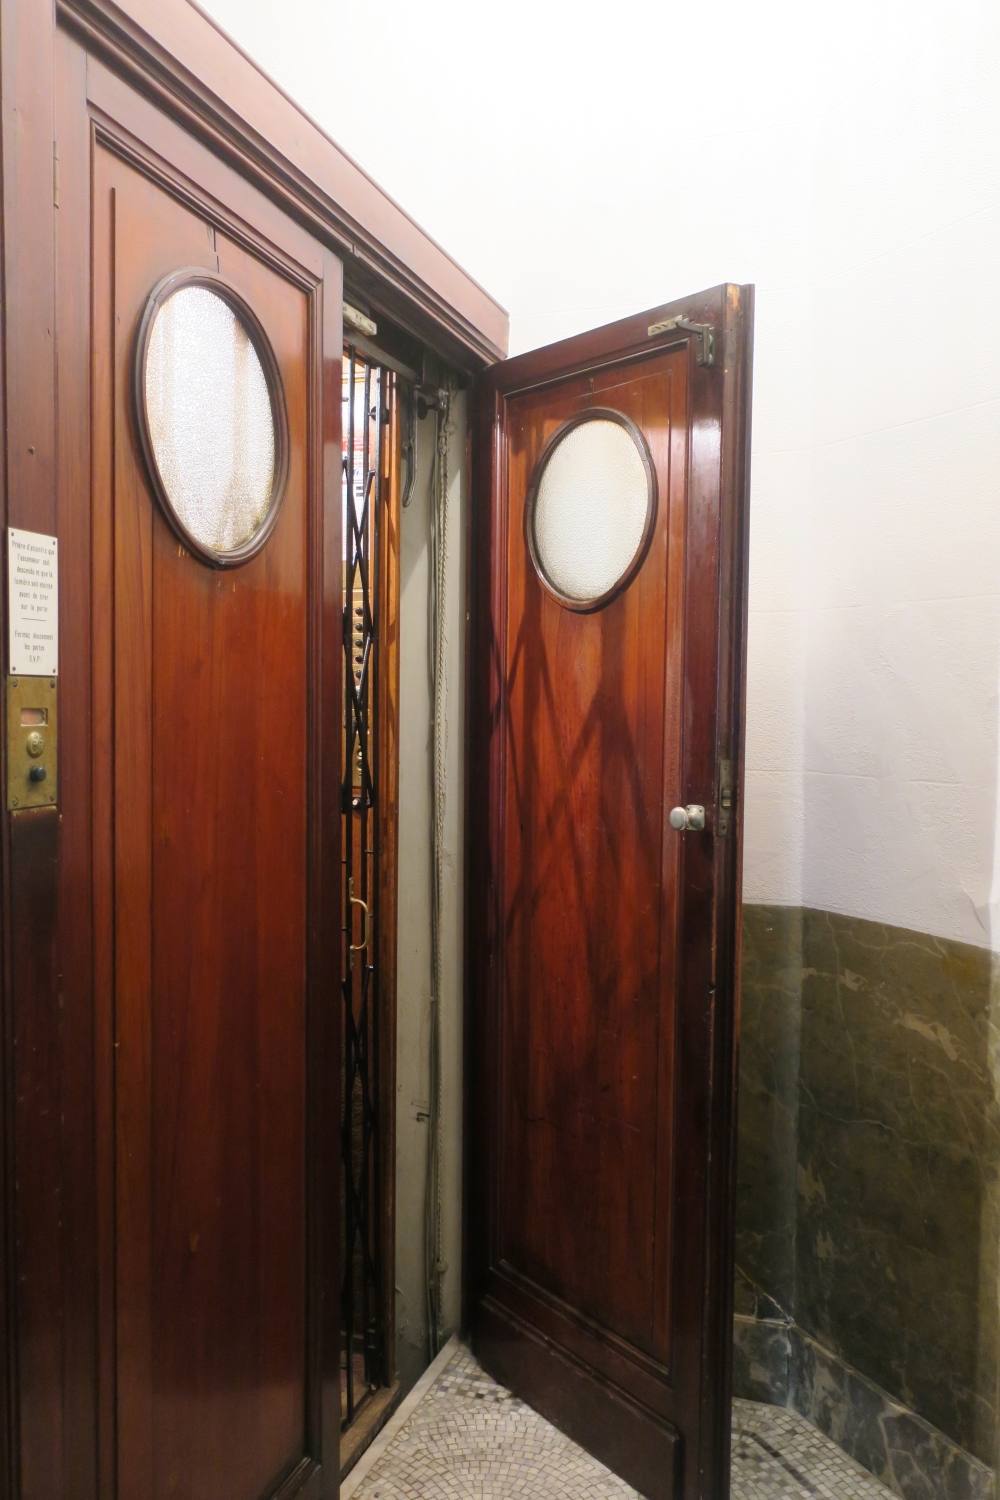 Avenue Émile Duray 28. Ascenseur au rez-de-chaussée avec porte palière ouverte © Homegrade , 2022